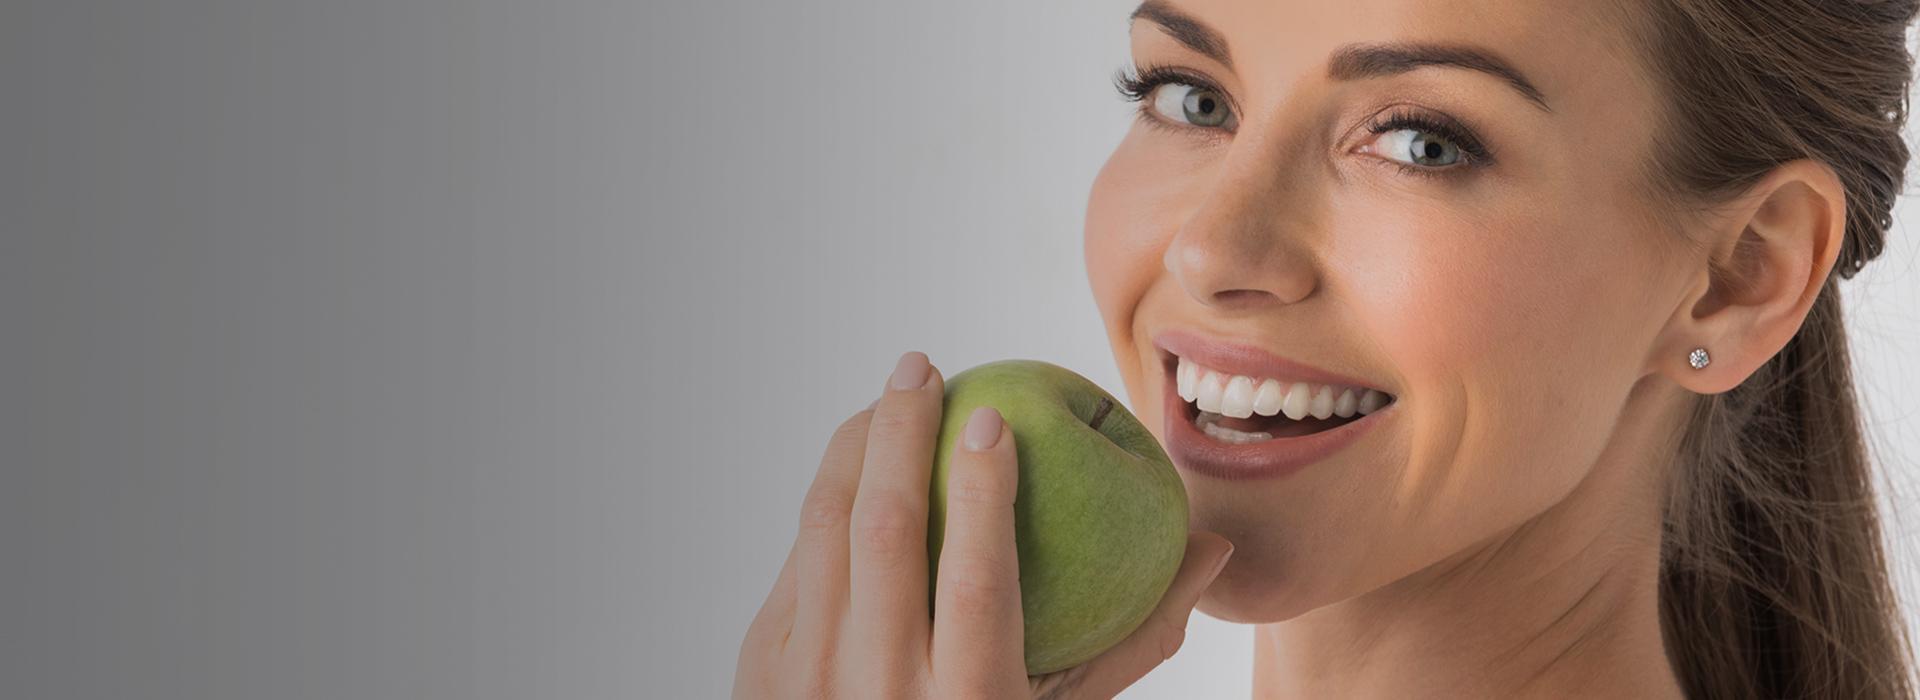 uśmiechnięta kobieta z zielonym jabłkiem